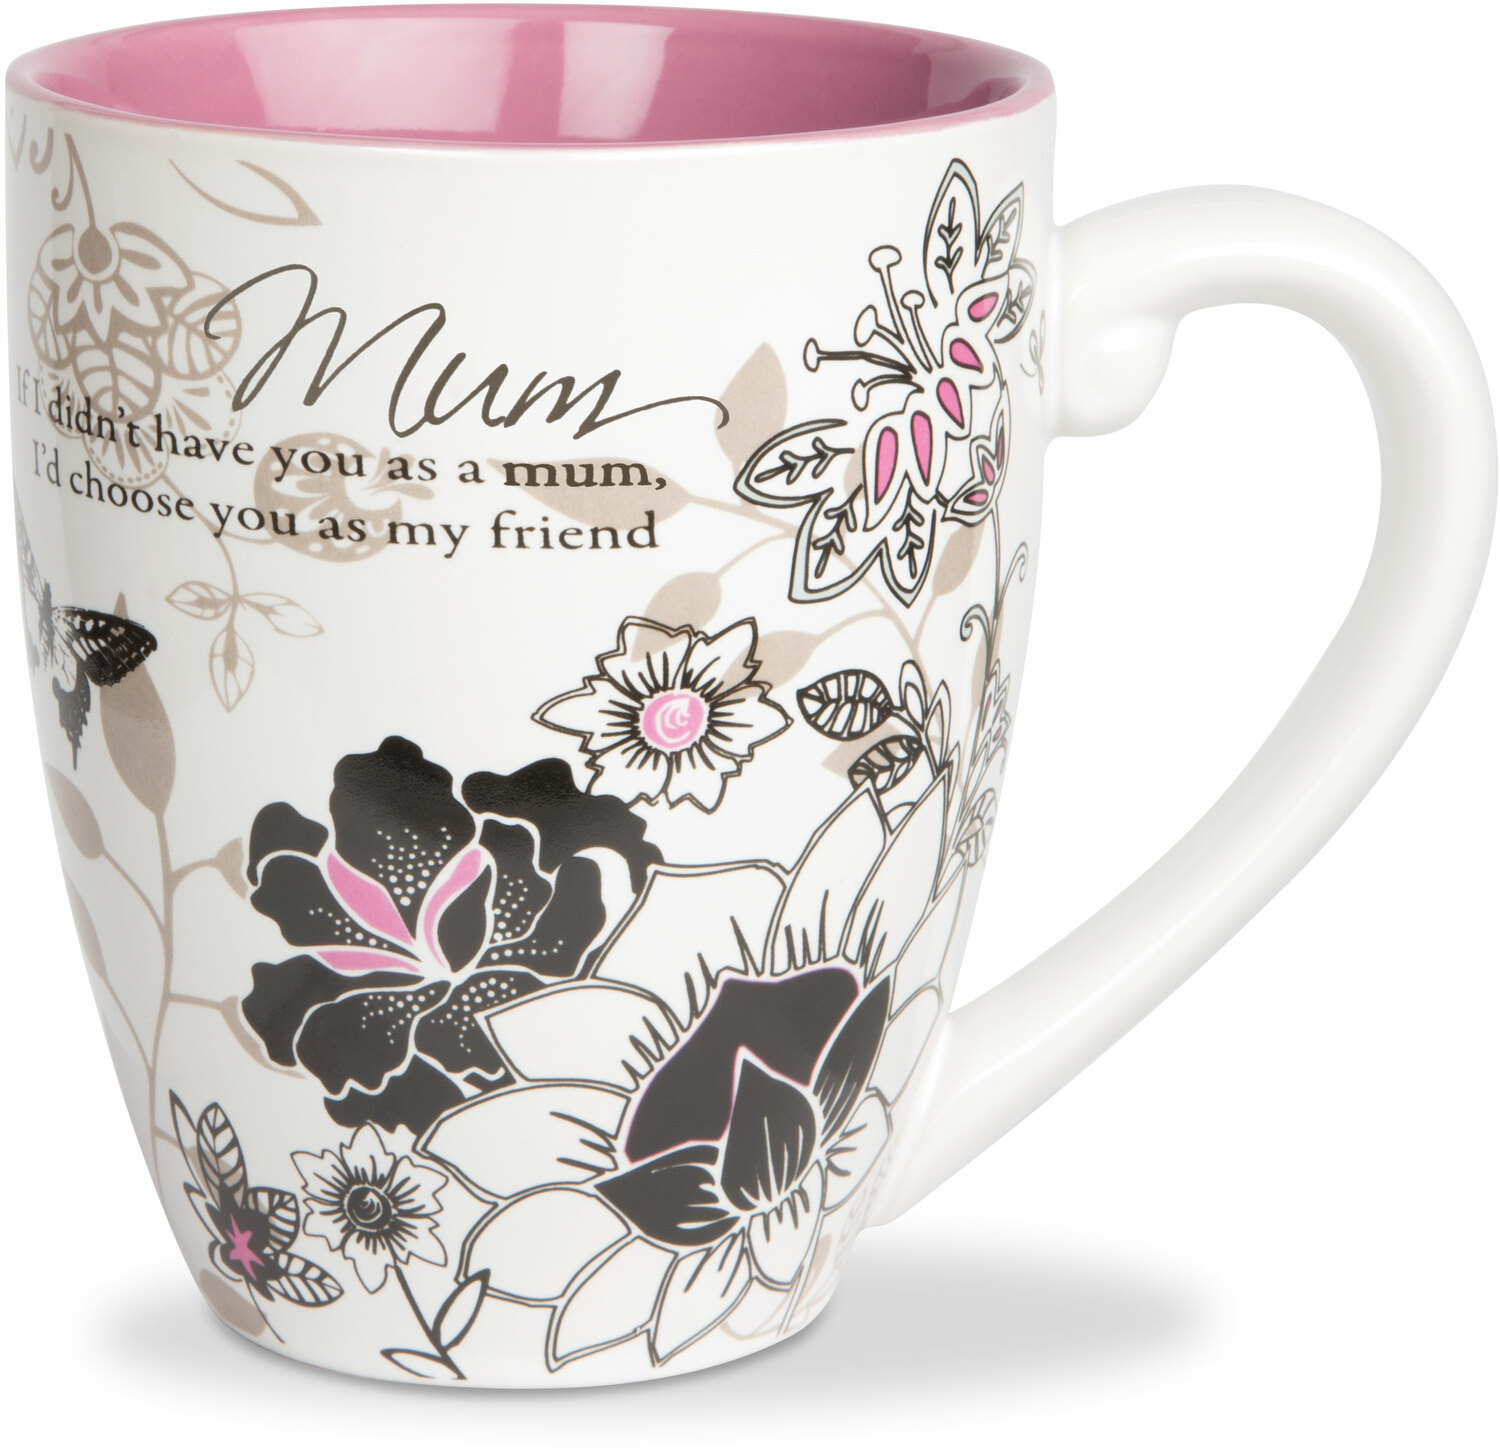 Mum by Pavilion Accessories - Mum - 20 oz Cup